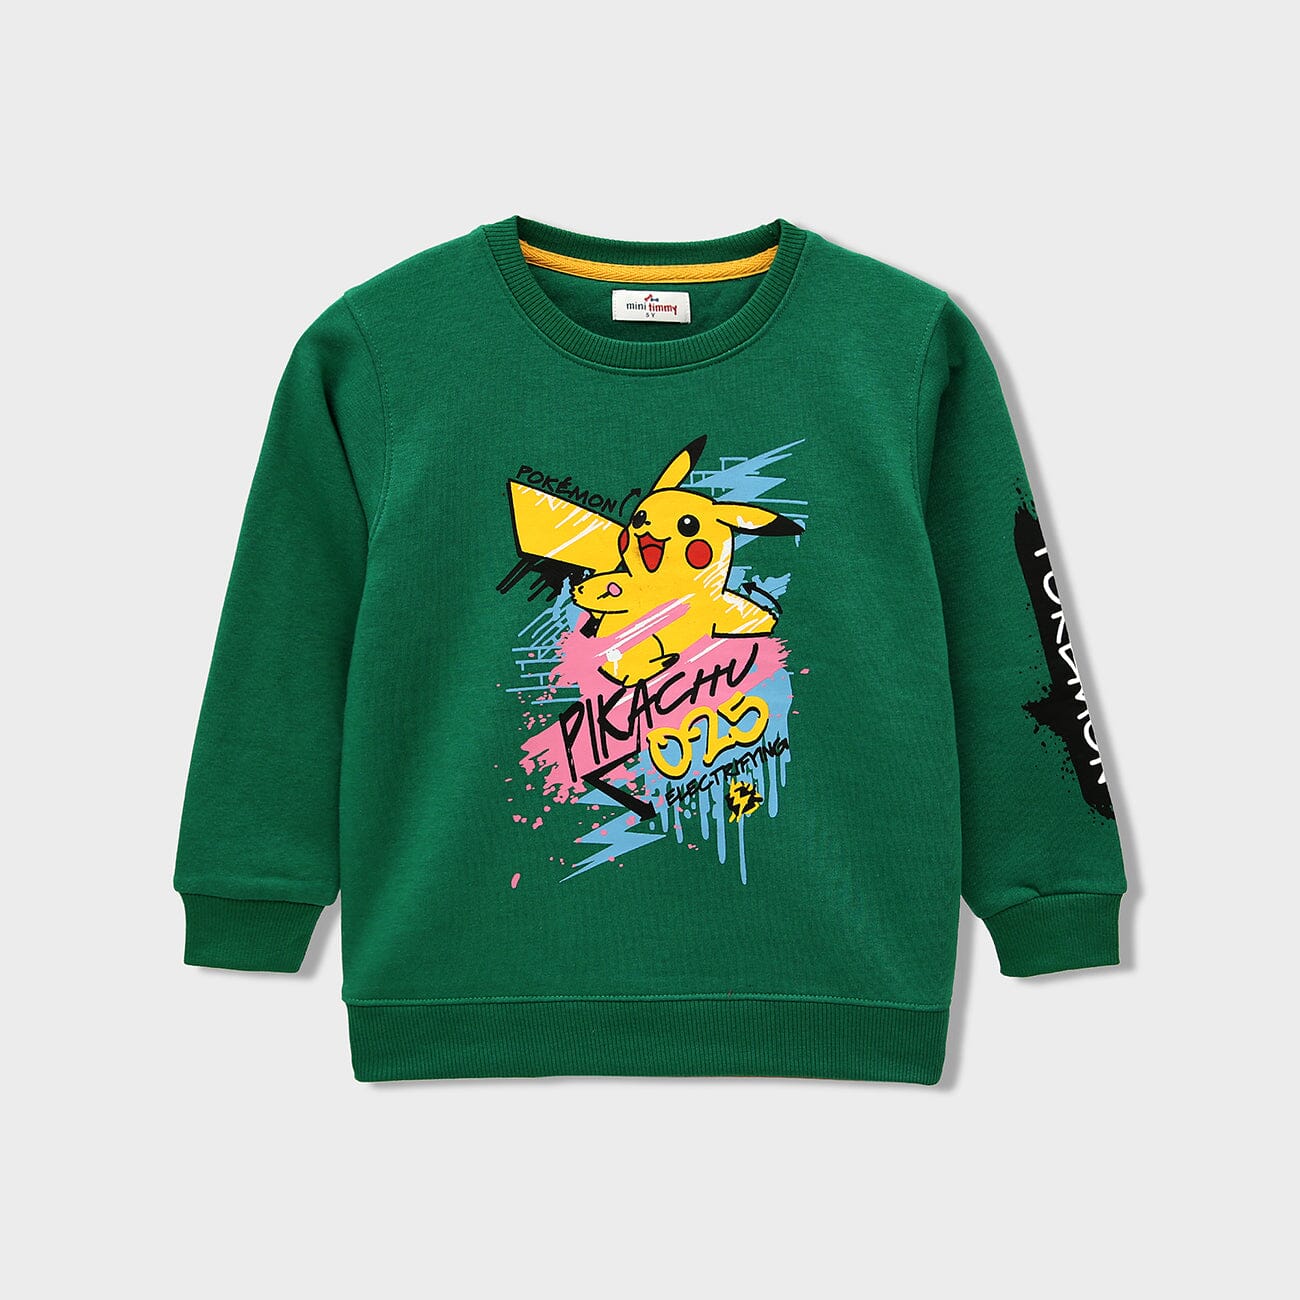 Premium Quality "Pikachu" Soft Sweatshirt For Kids (120092)